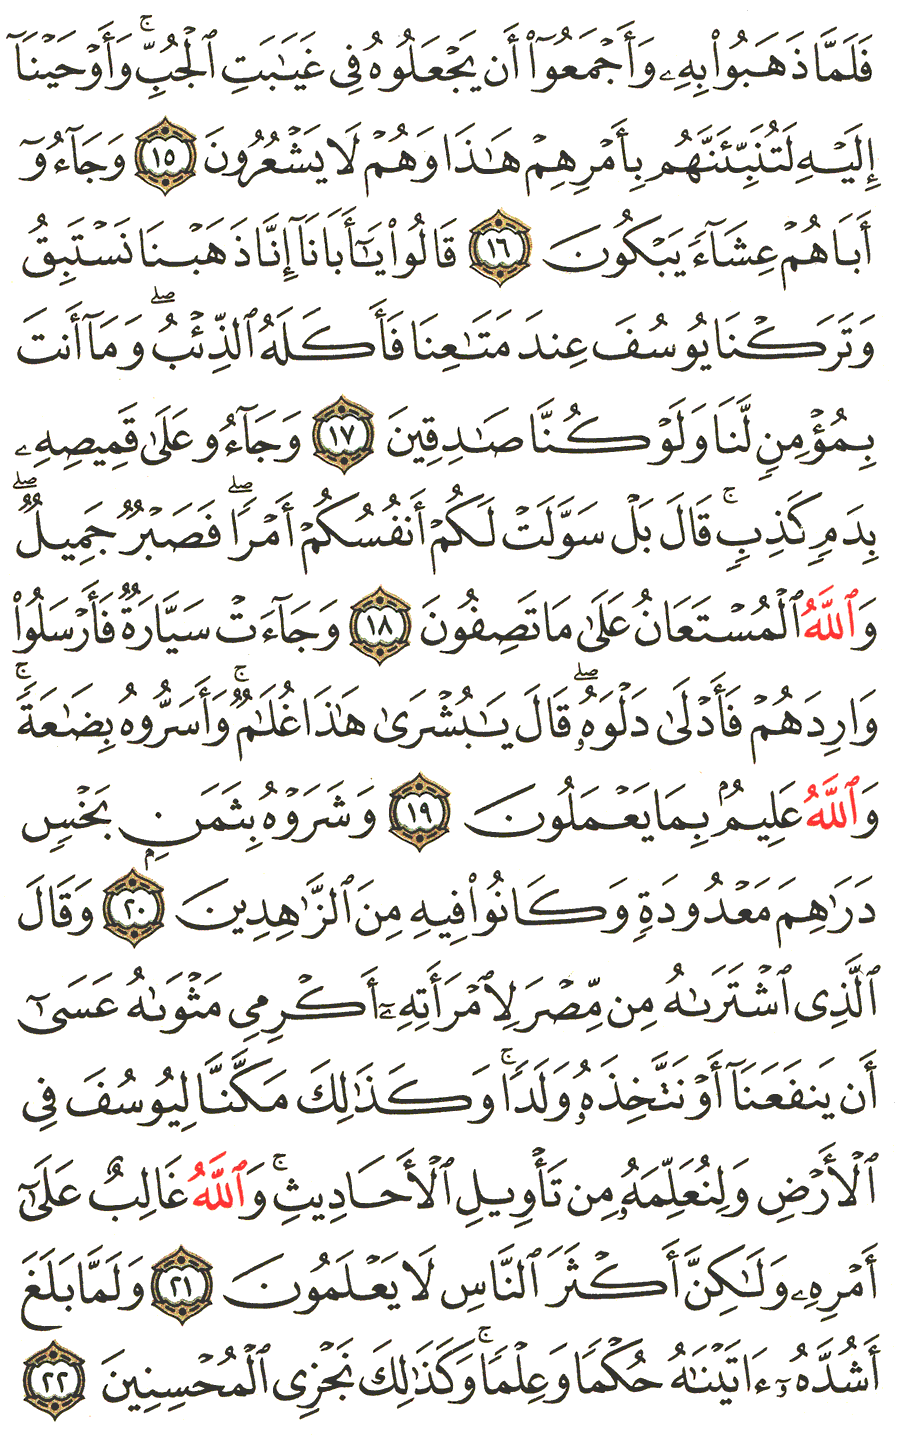 الصفحة 237 من القرآن الكريم